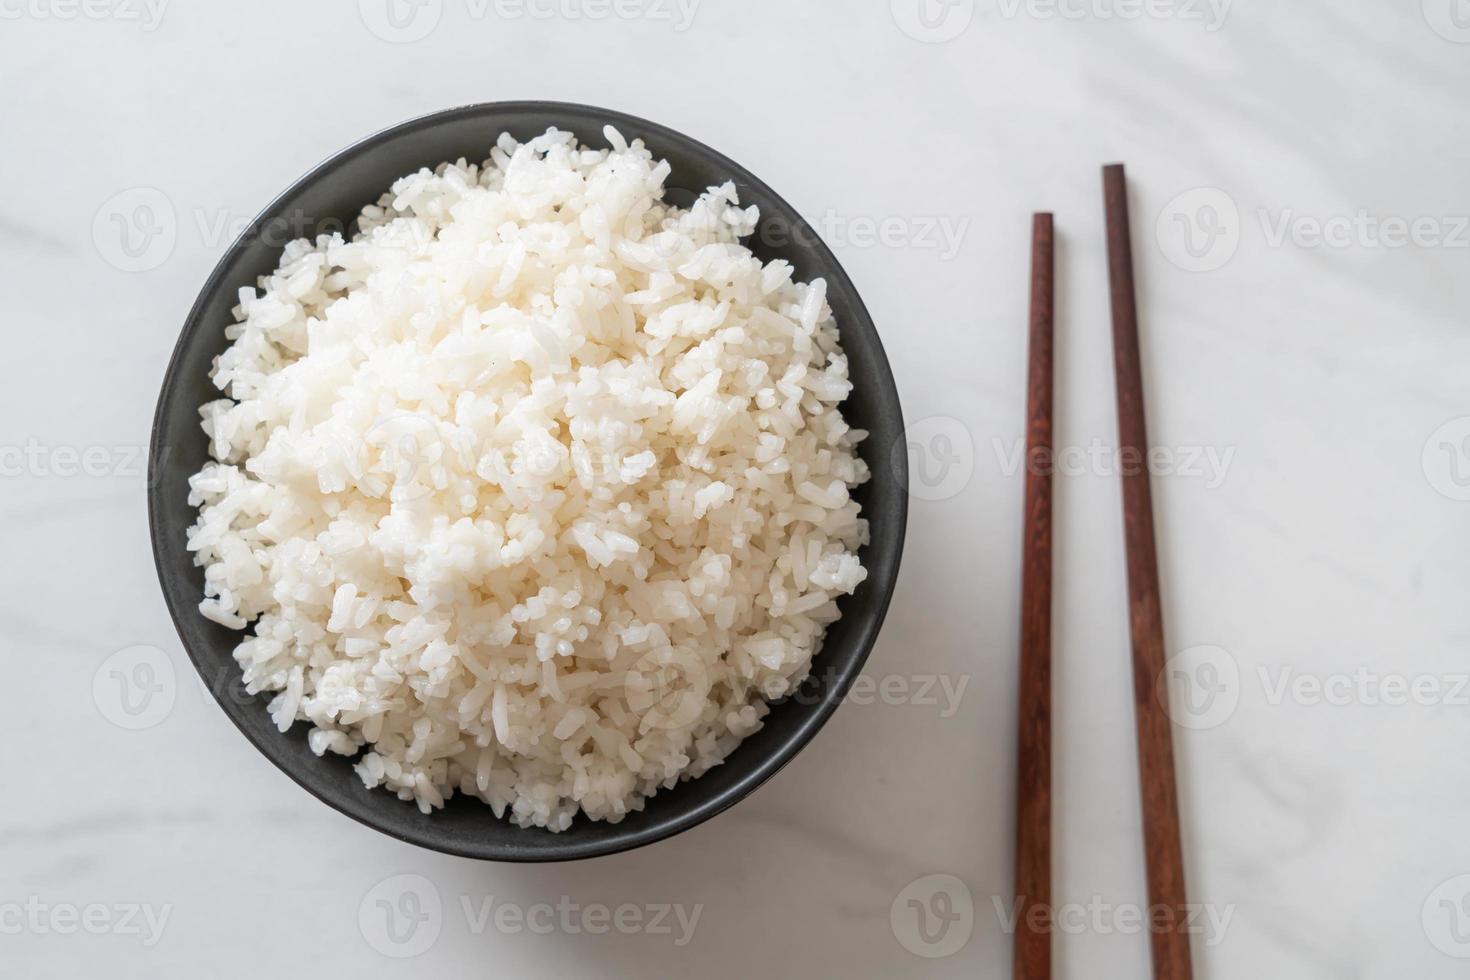 ciotola di riso bianco al gelsomino tailandese cotto foto